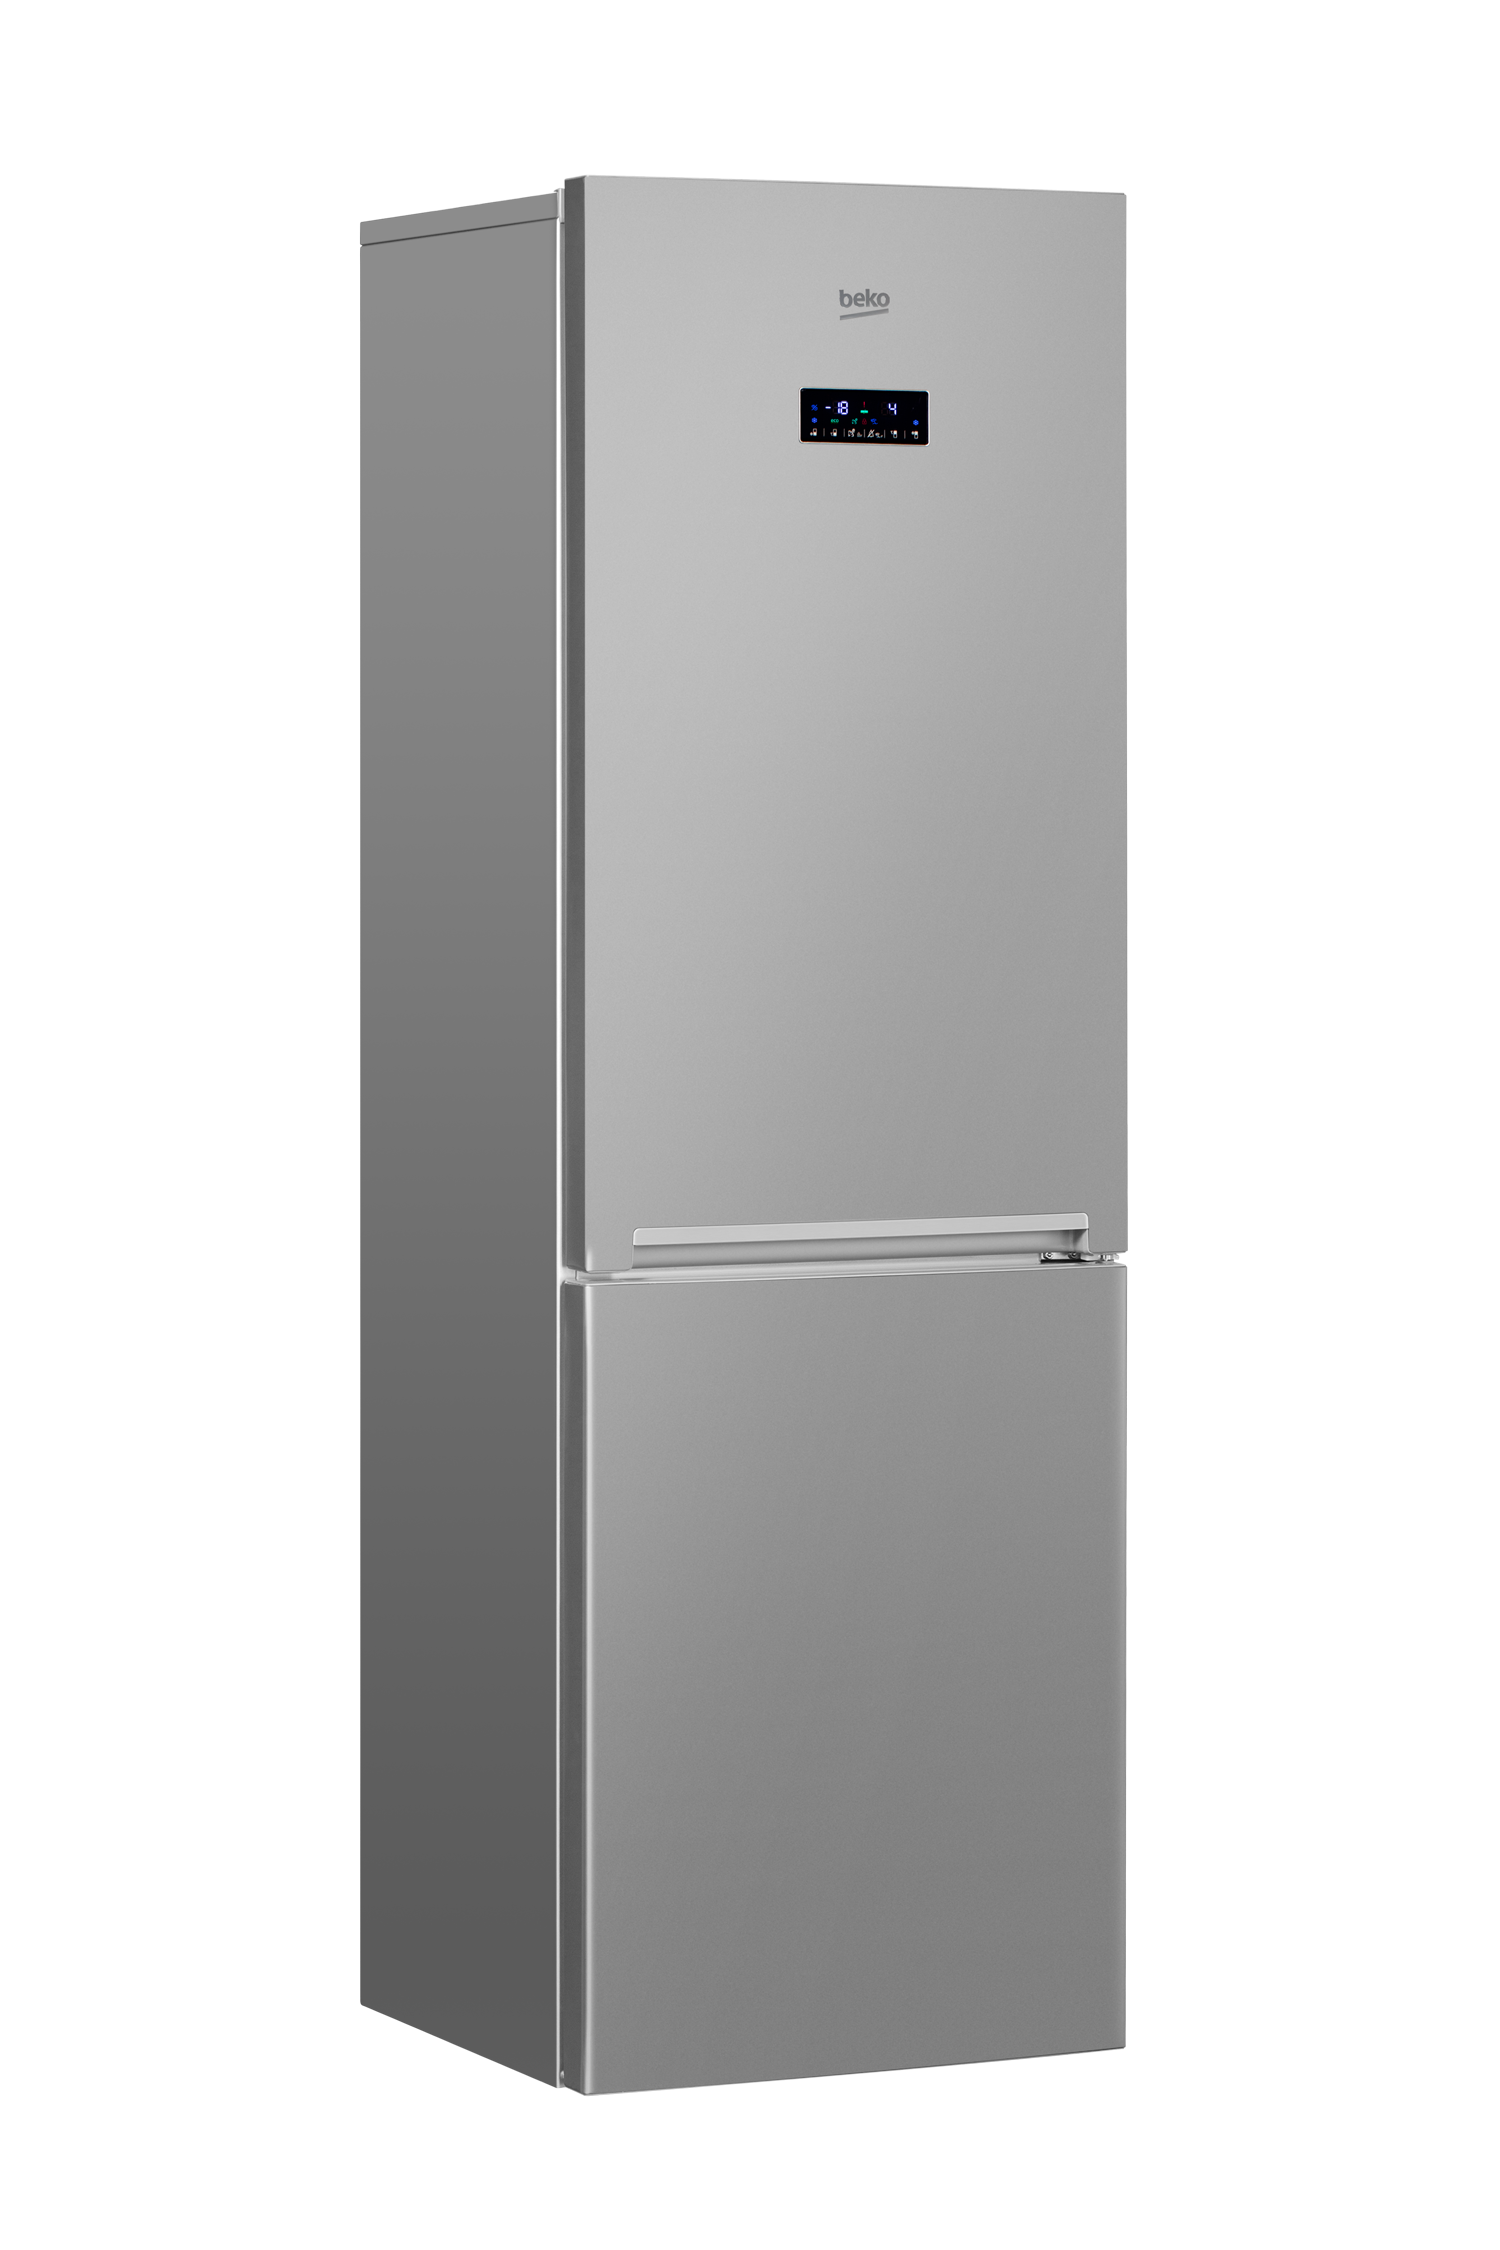 М видео холодильники ноу фрост. Beko холодильник Beko rcnk356e20s. Холодильник Beko no Frost. БЕКО холодильник 54см. Холодильник БЕКО двухкамерный ноу Фрост.